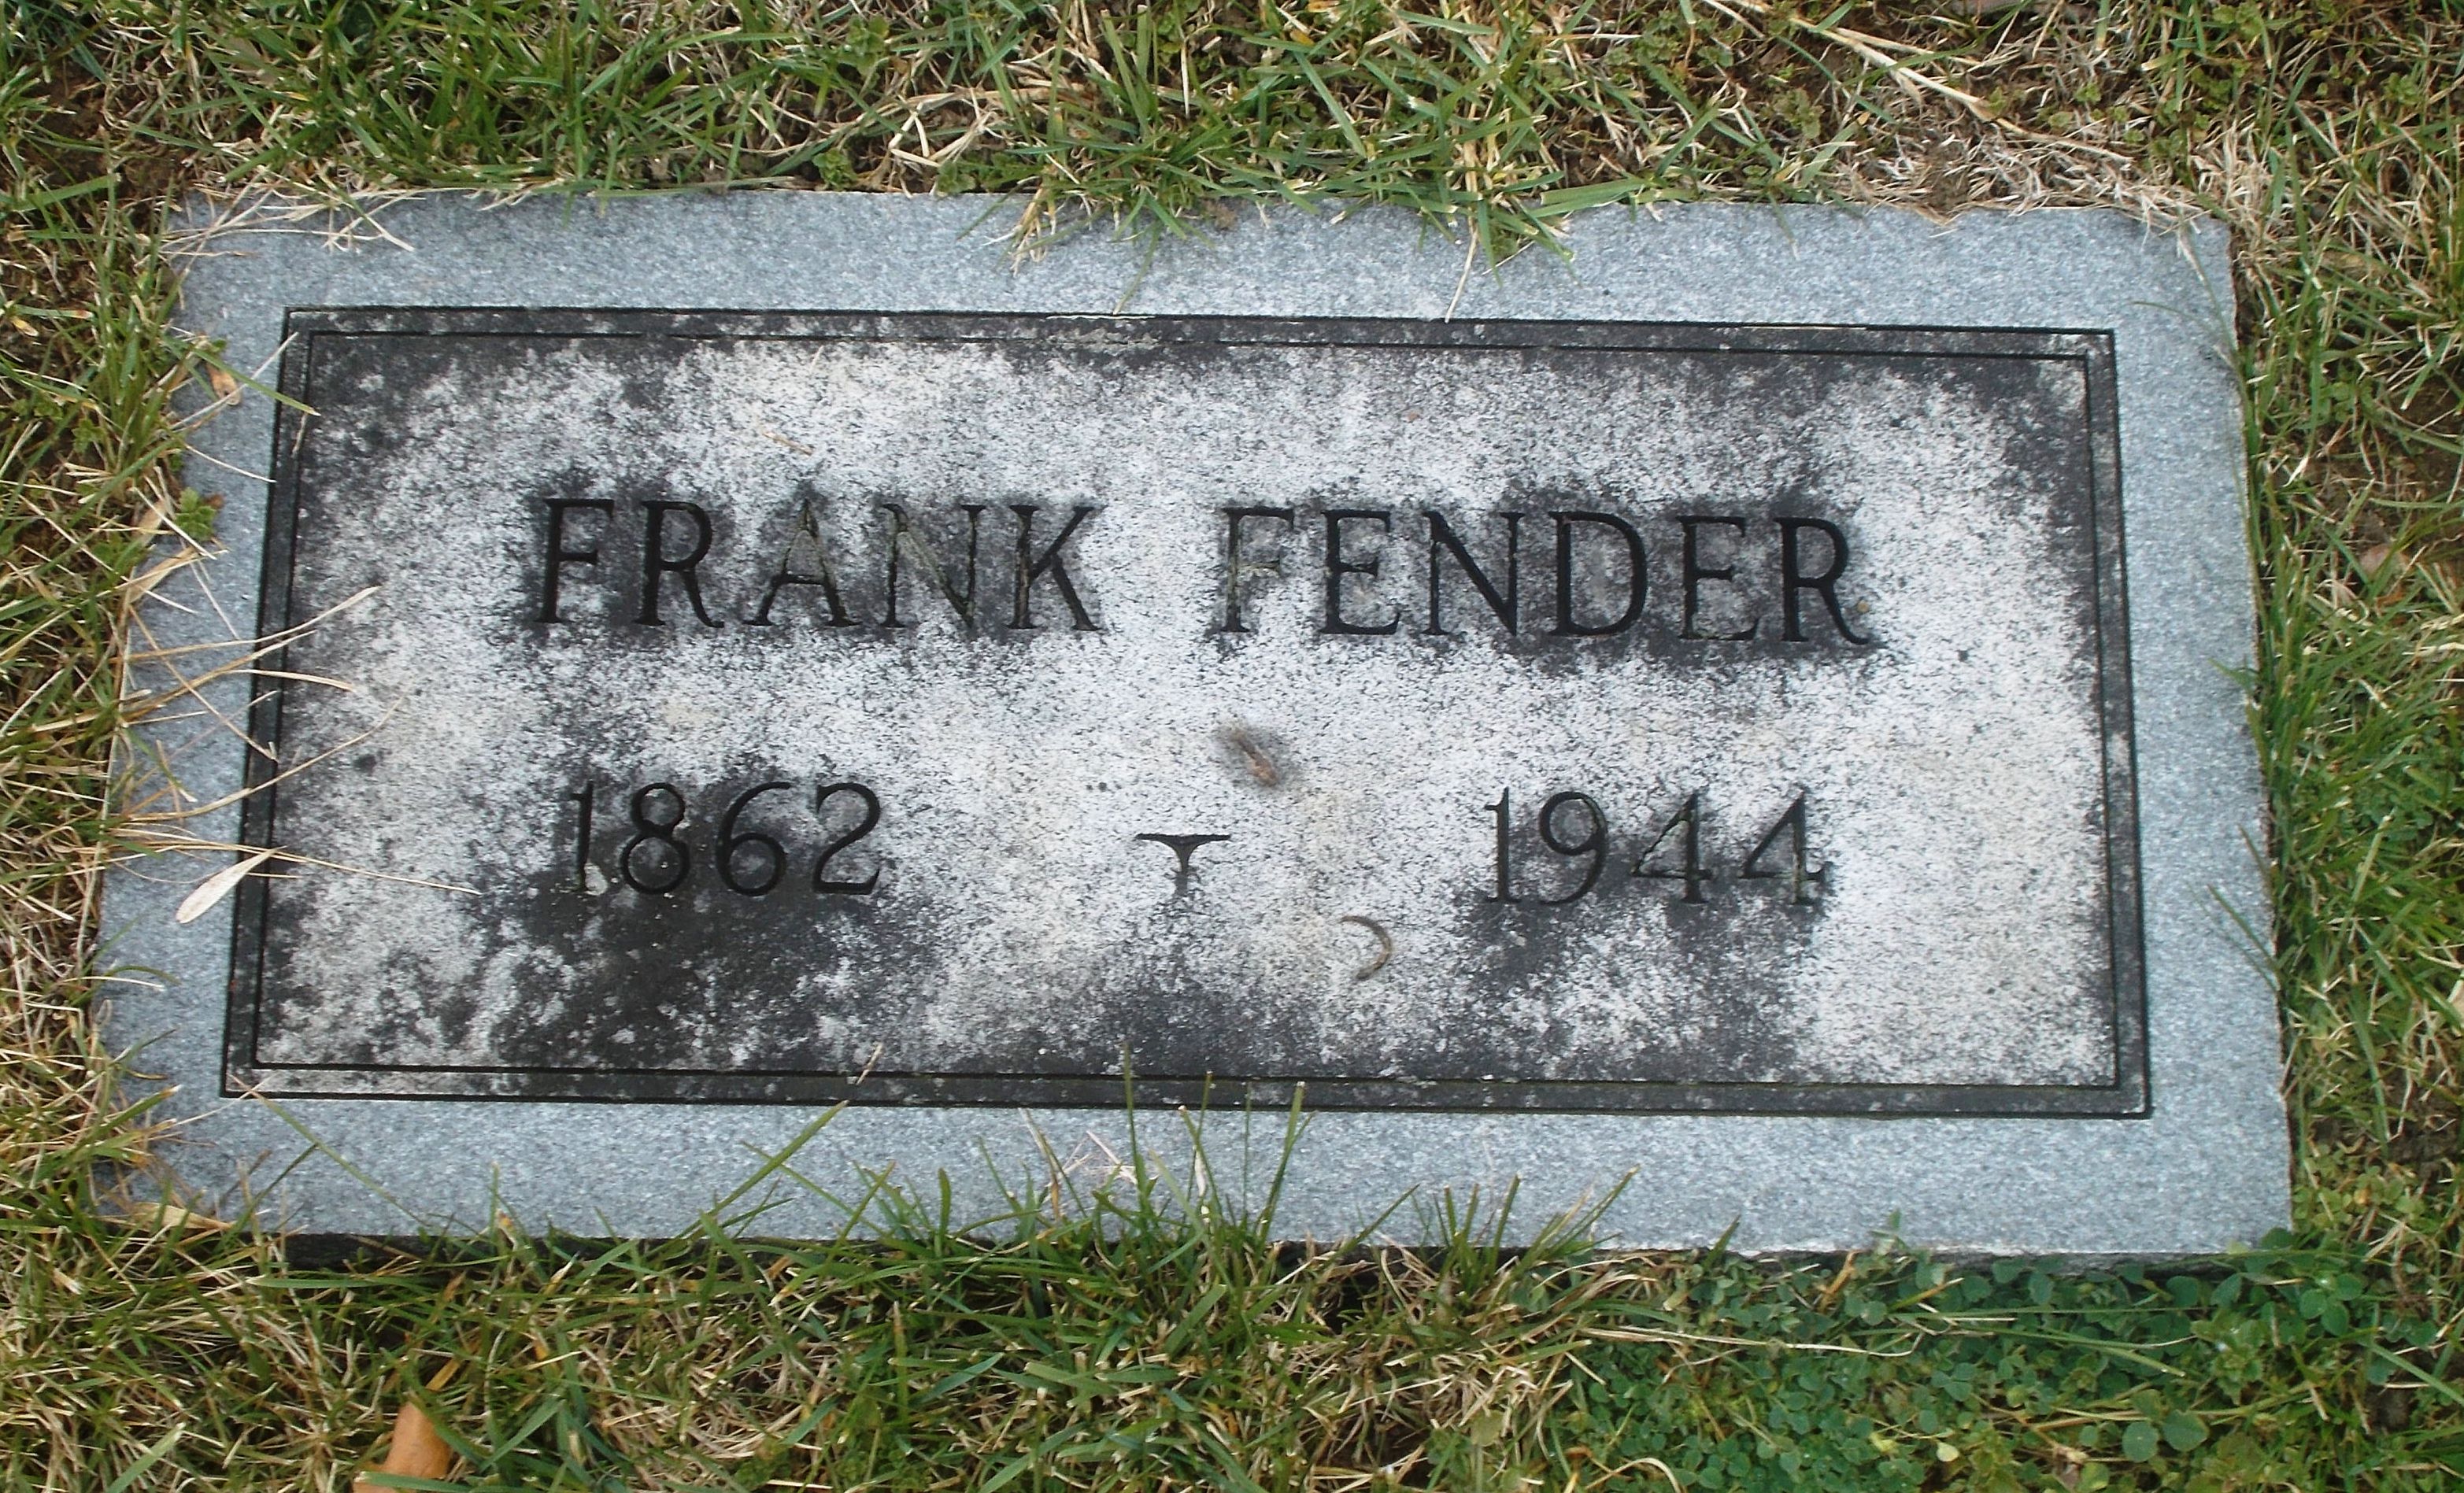 Frank Fender